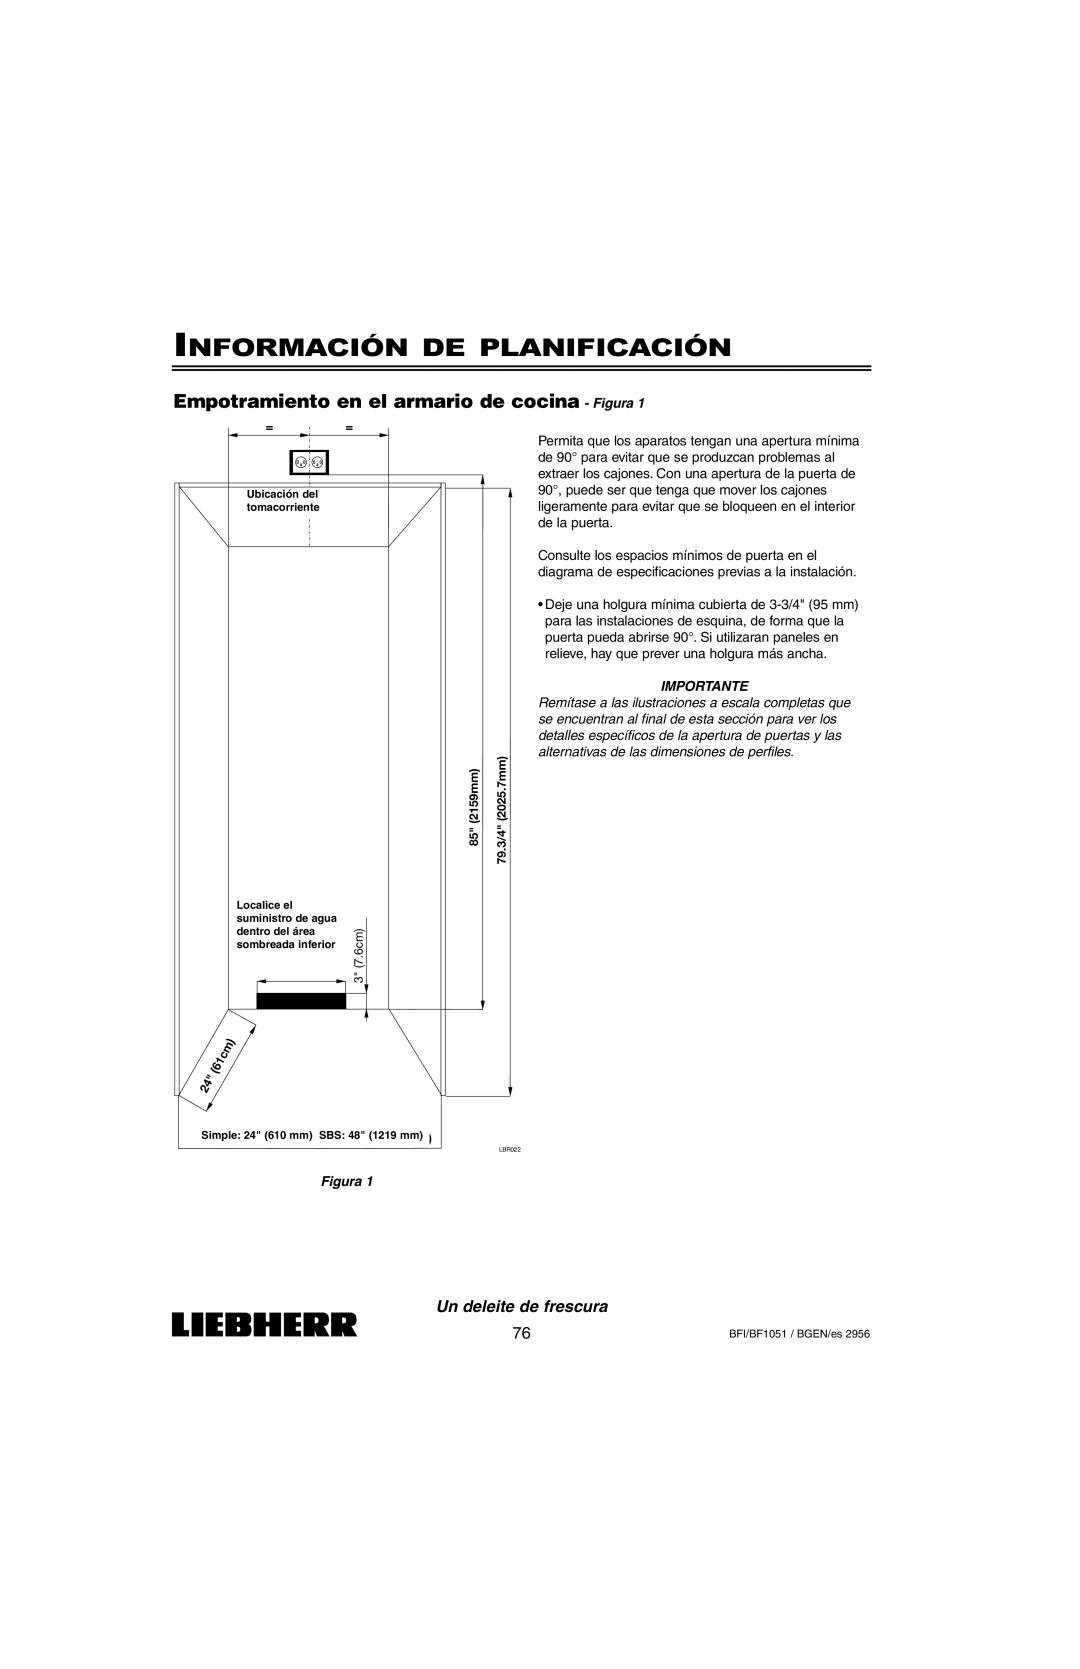 Liebherr BFI1051 Información De Planificación, Empotramiento en el armario de cocina - Figura, Un deleite de frescura 